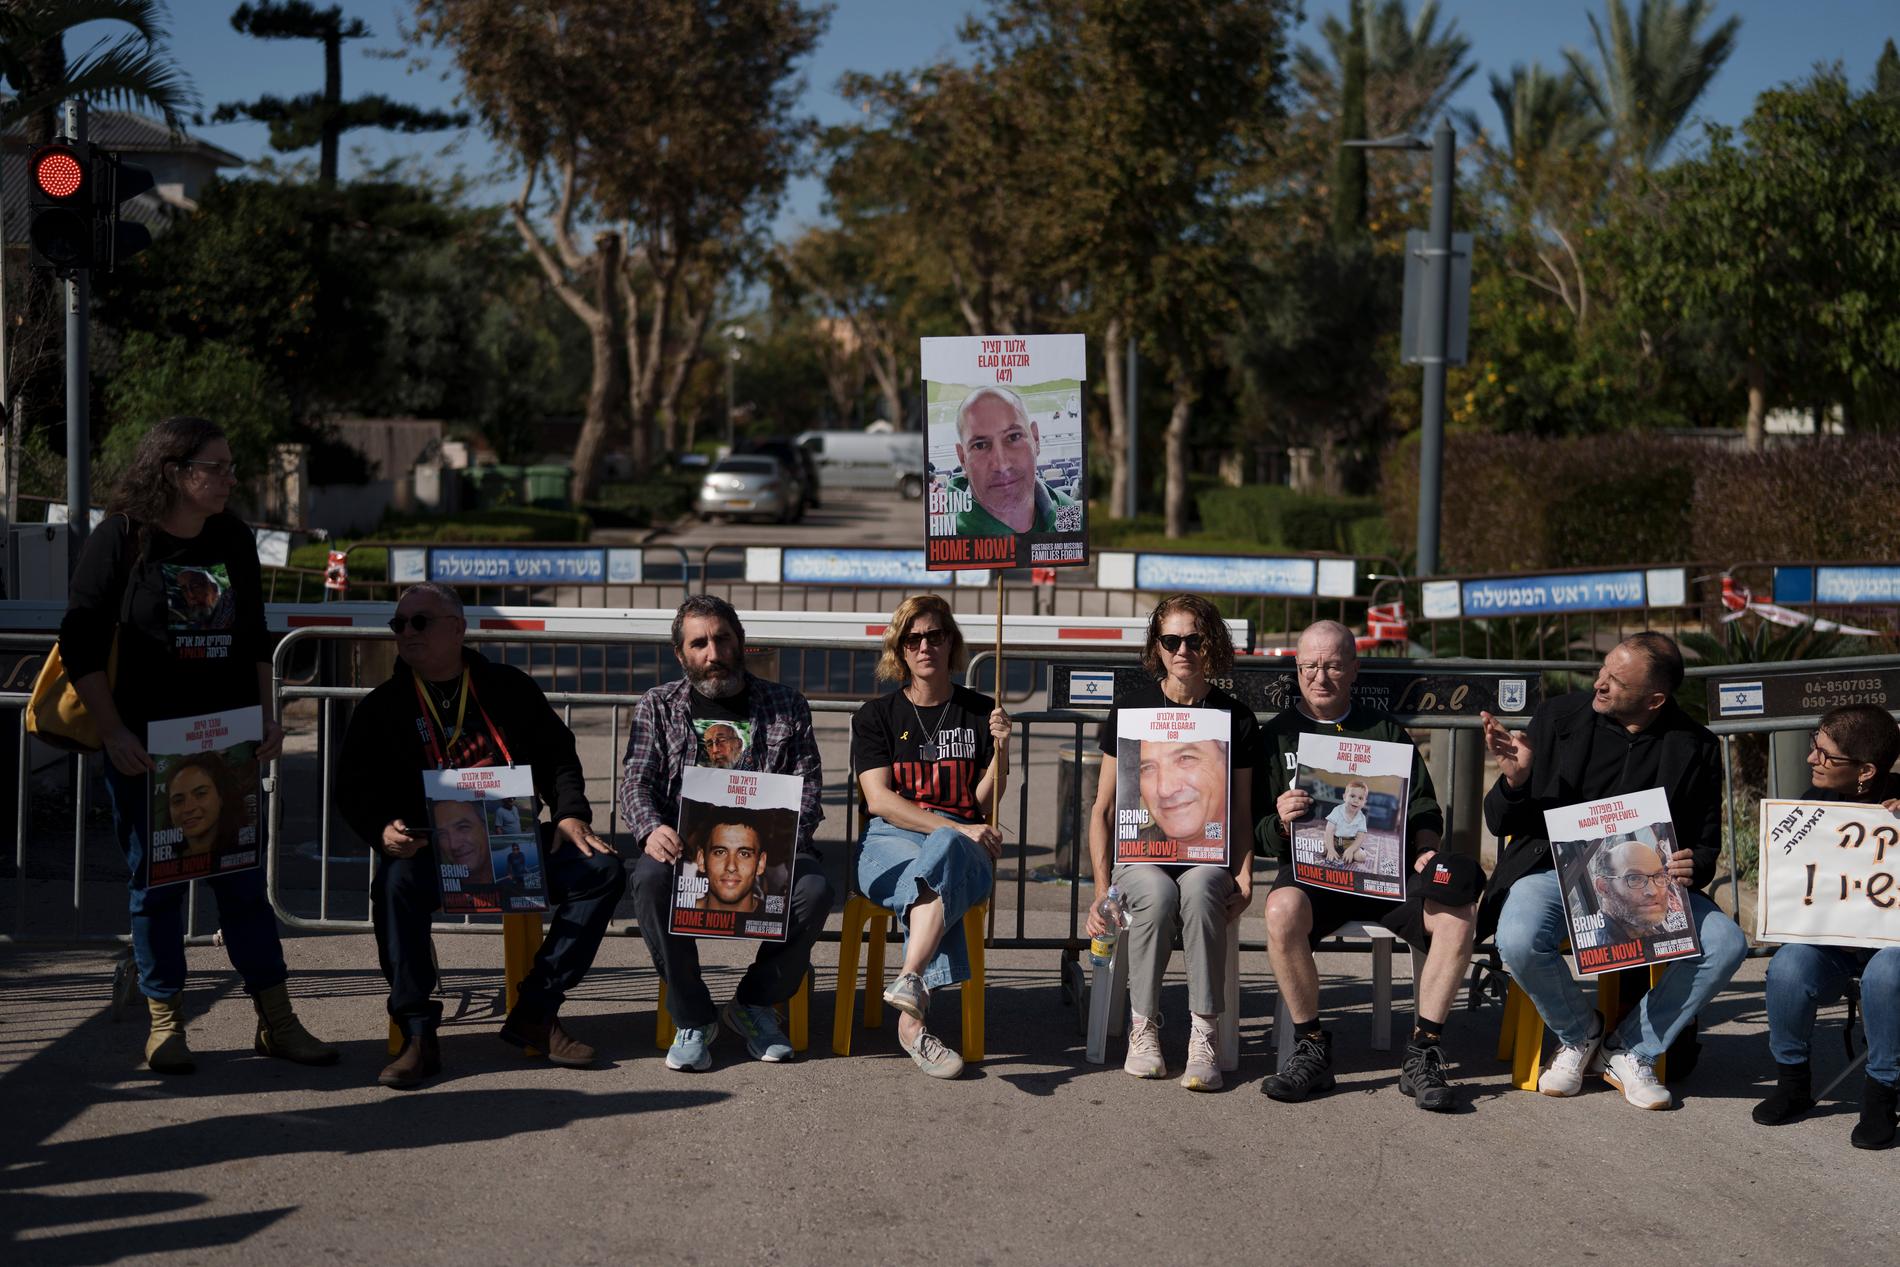 Anhöriga till gisslan protesterade utanför den israeliska premiärministern Benjamin Netanyahus privata bostad under lördagen.